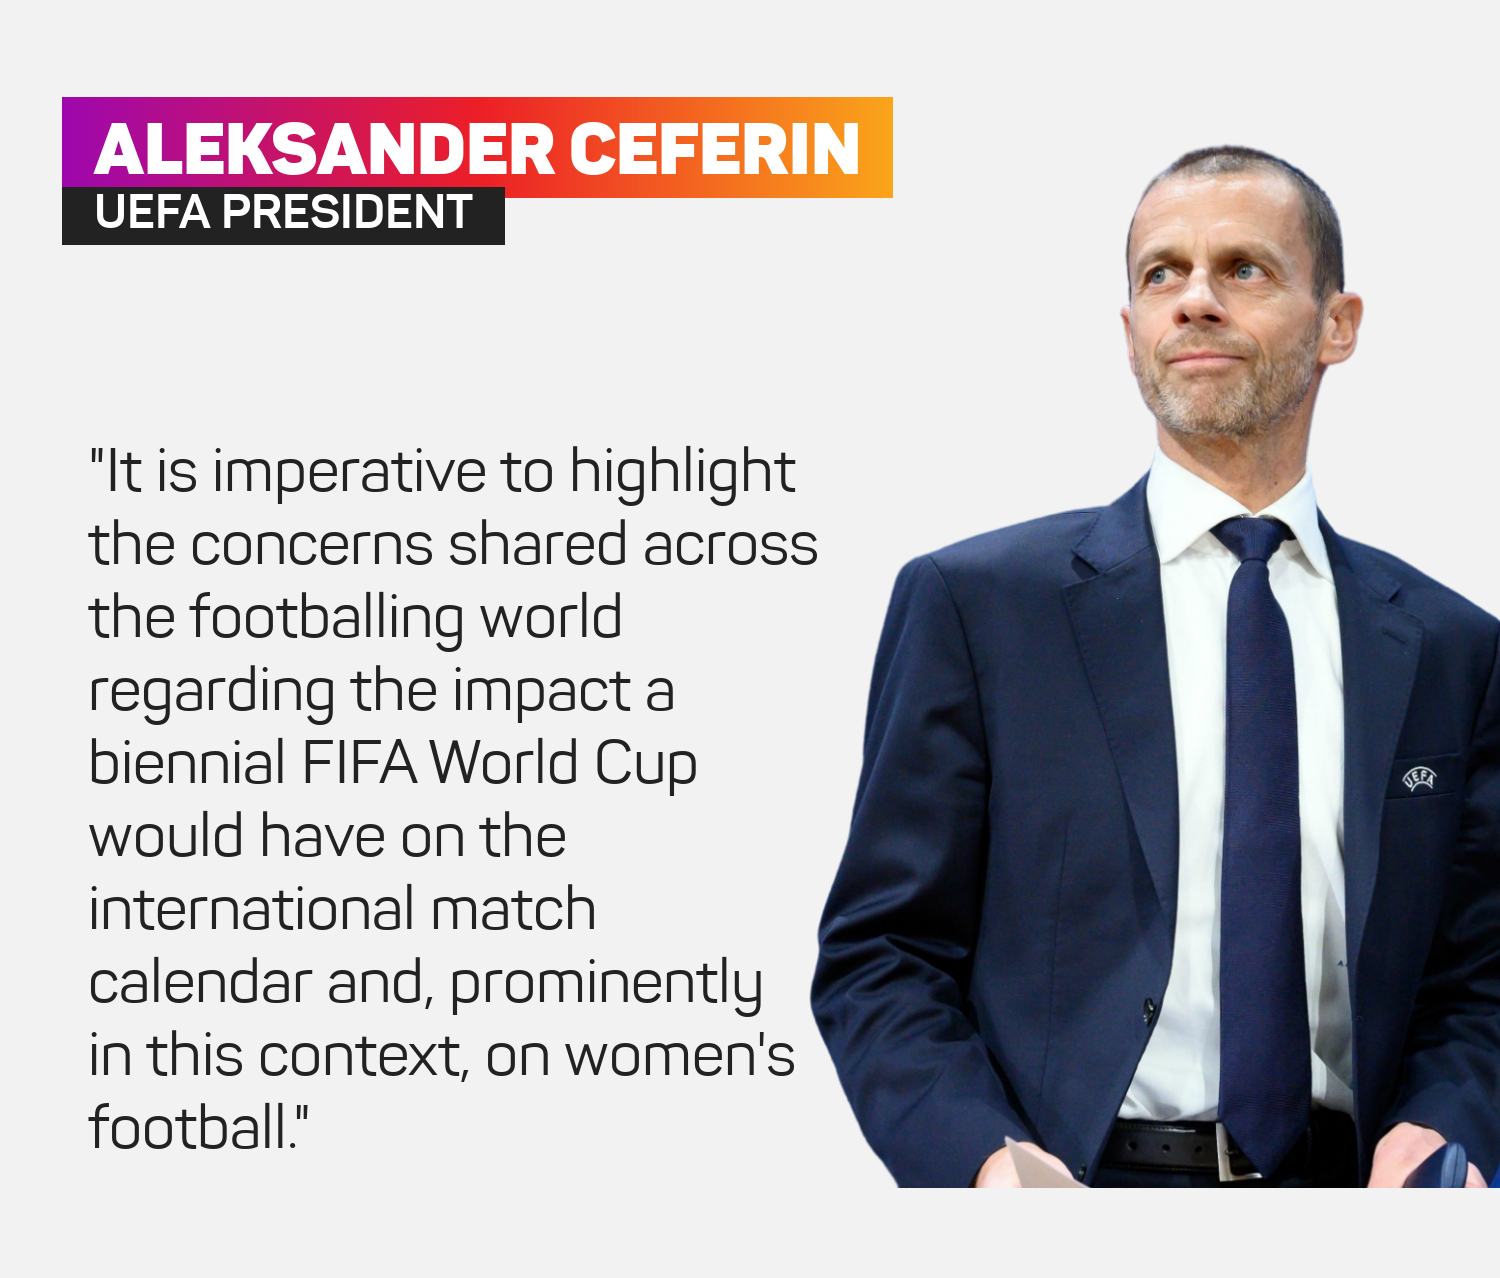 UEFA president Aleksander Ceferin expressed World Cup concern